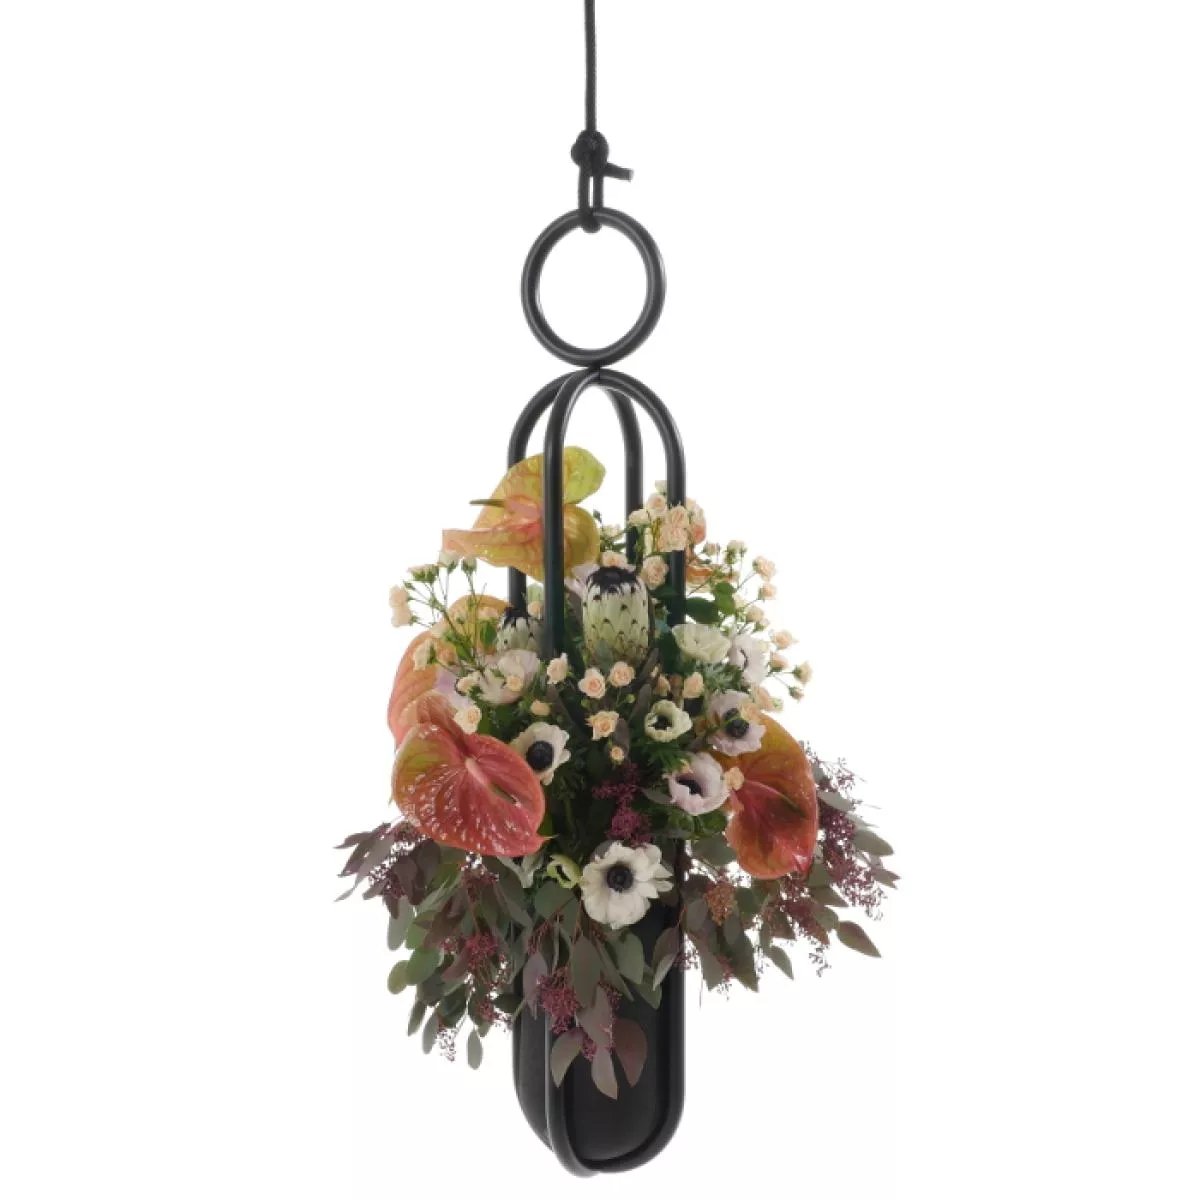 Aufrechte Blumenampel (Topf oder Vase) mit handgefertigtem Gummibehälter